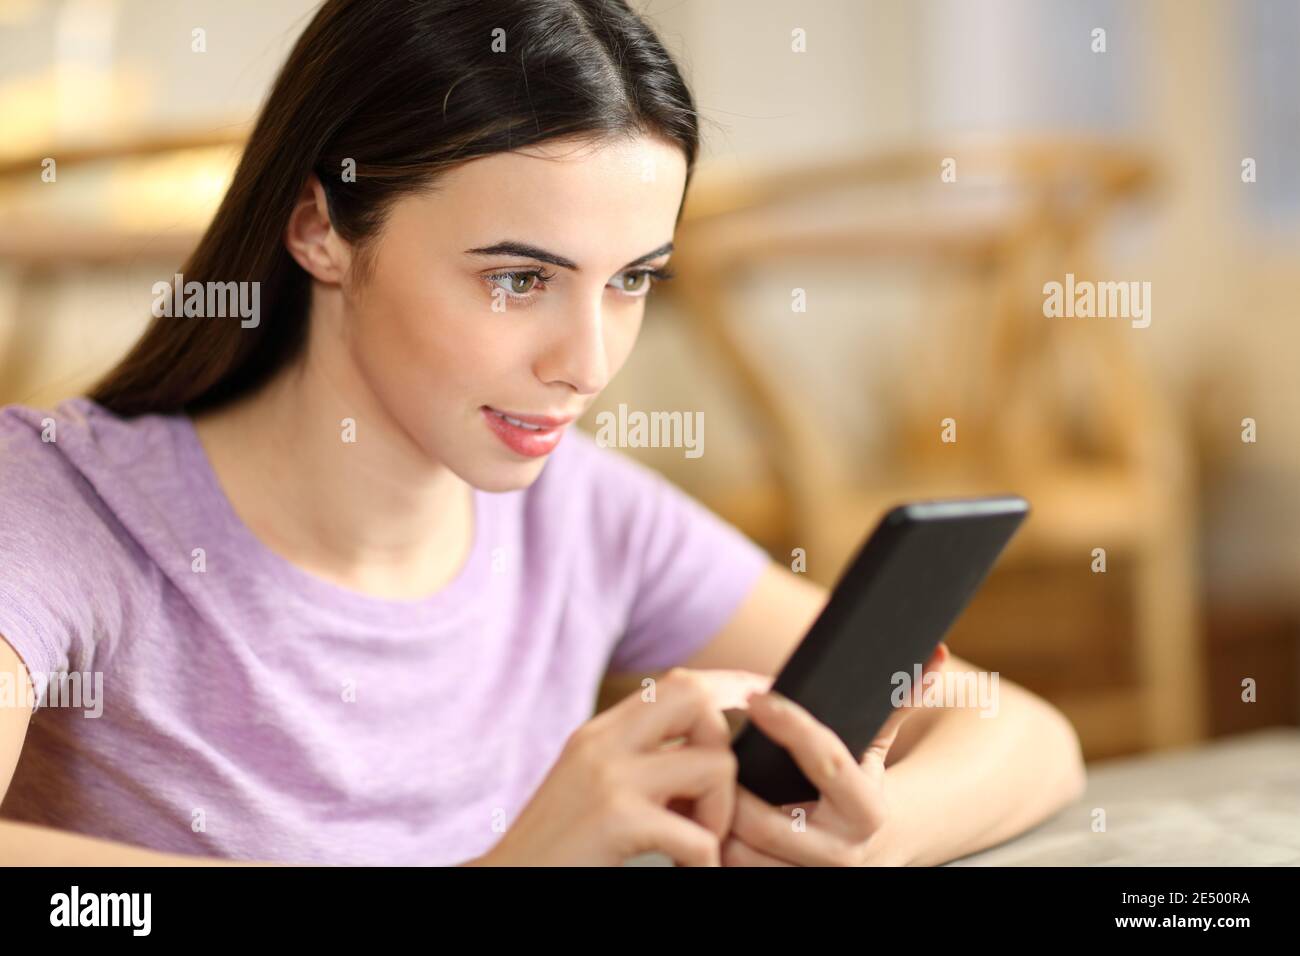 Femme concentrée vérifiant le contenu sur un smartphone assis à la maison Banque D'Images